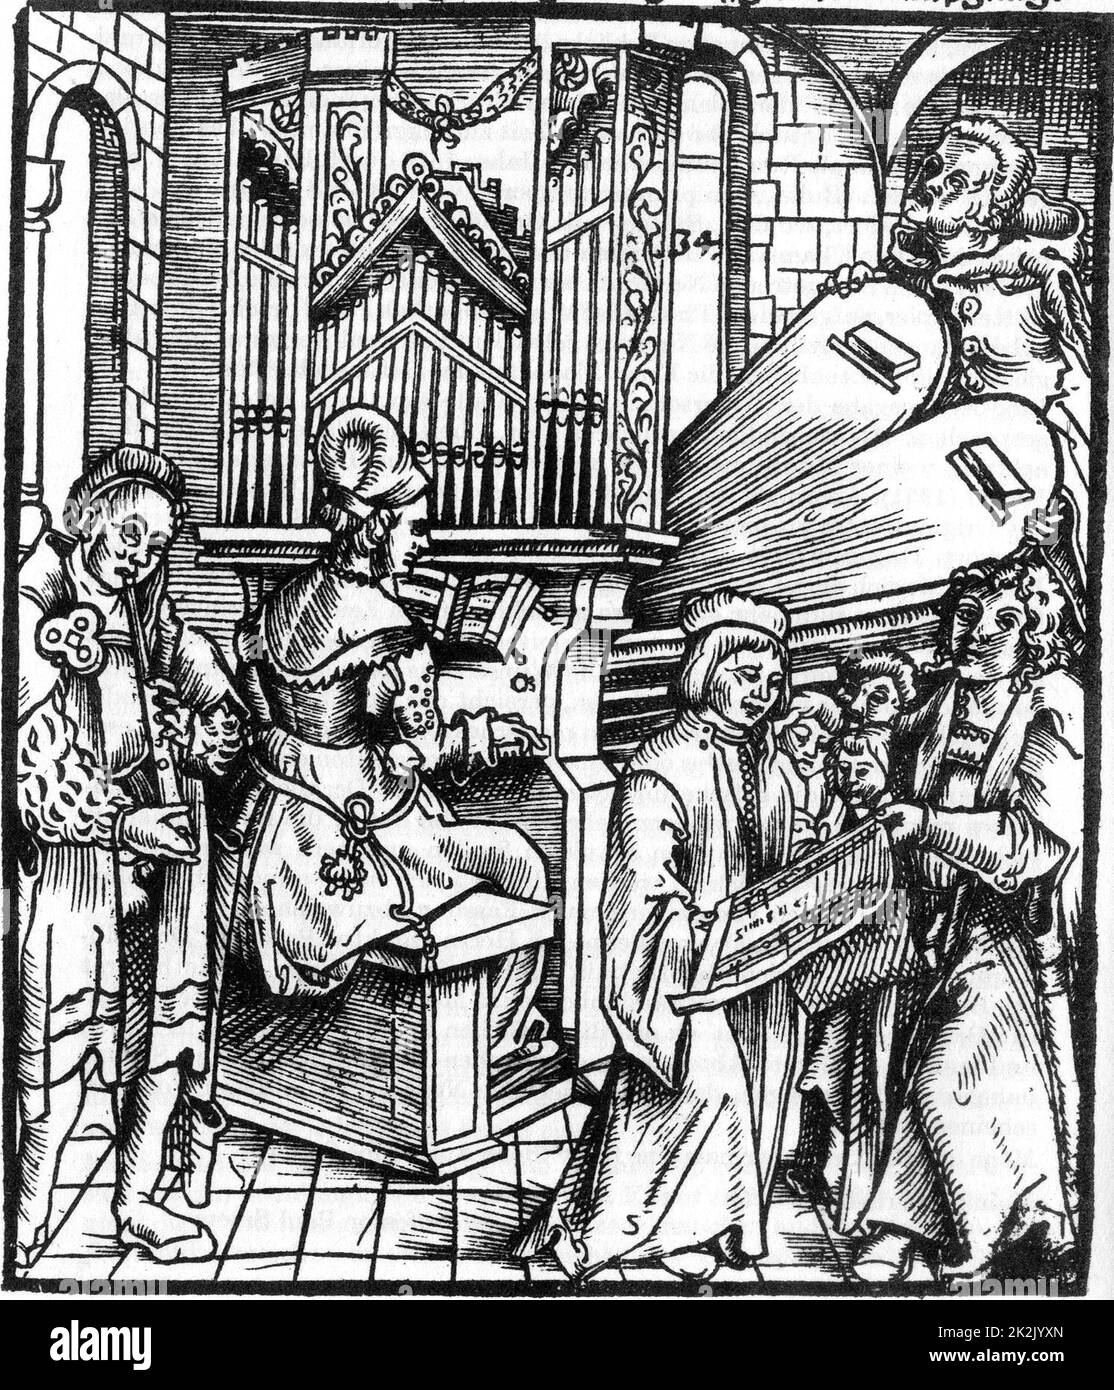 Deutscher Holzschnitt aus dem 16.. Jahrhundert, in dem Musikinstrumente gespielt werden. Dazu gehören Orgel und Flöte. Ein Chor singt mit. Stockfoto